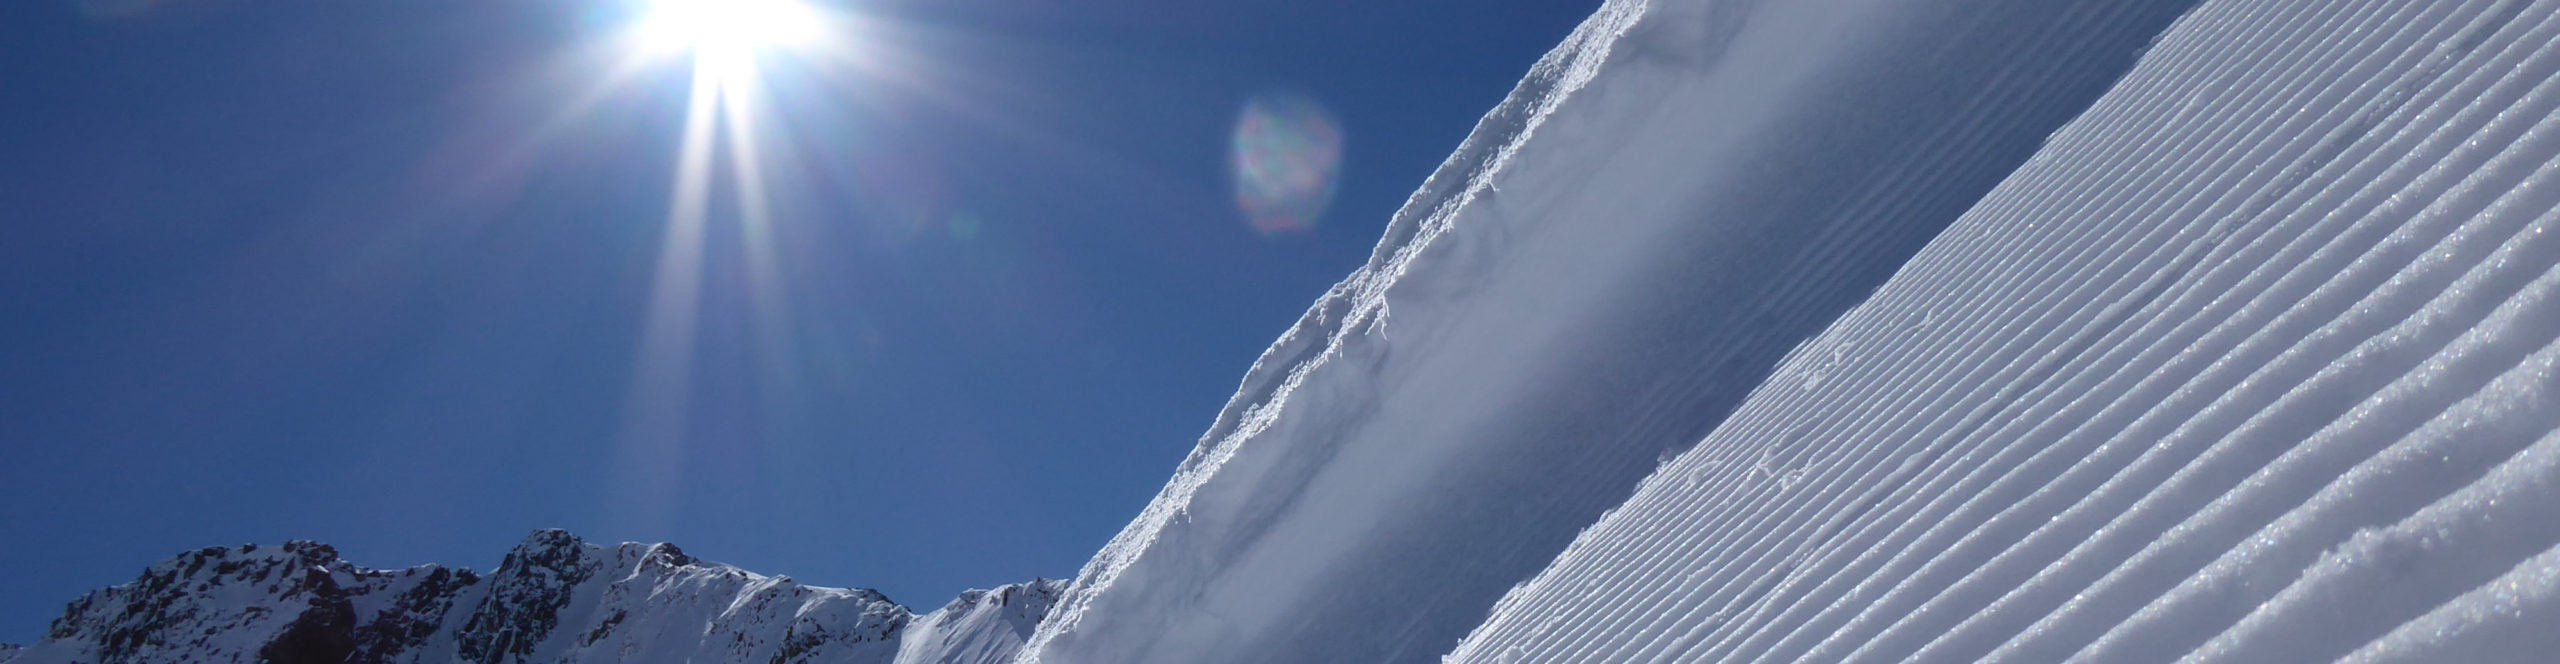 ZILLERTAL- MAYRHOFEN – SchneeSpaßTag – Tagesskireise ins aktivsten Tal der Alpen 